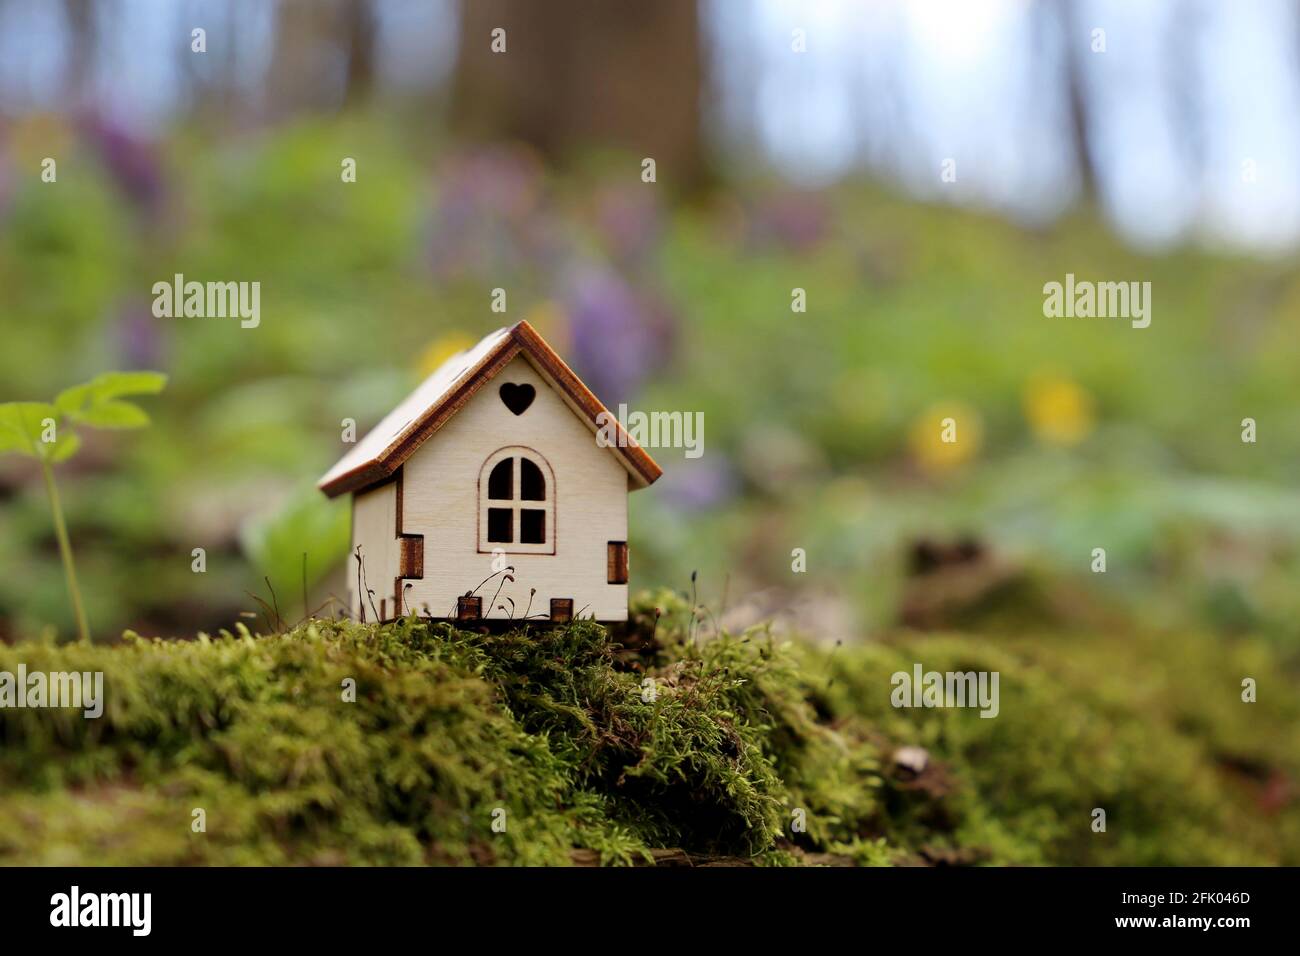 Modèle de maison en bois dans une forêt sur fond de fleurs de printemps. Concept de chalet de campagne, immobilier dans une zone écologiquement propre, couleurs vives de la fée Banque D'Images